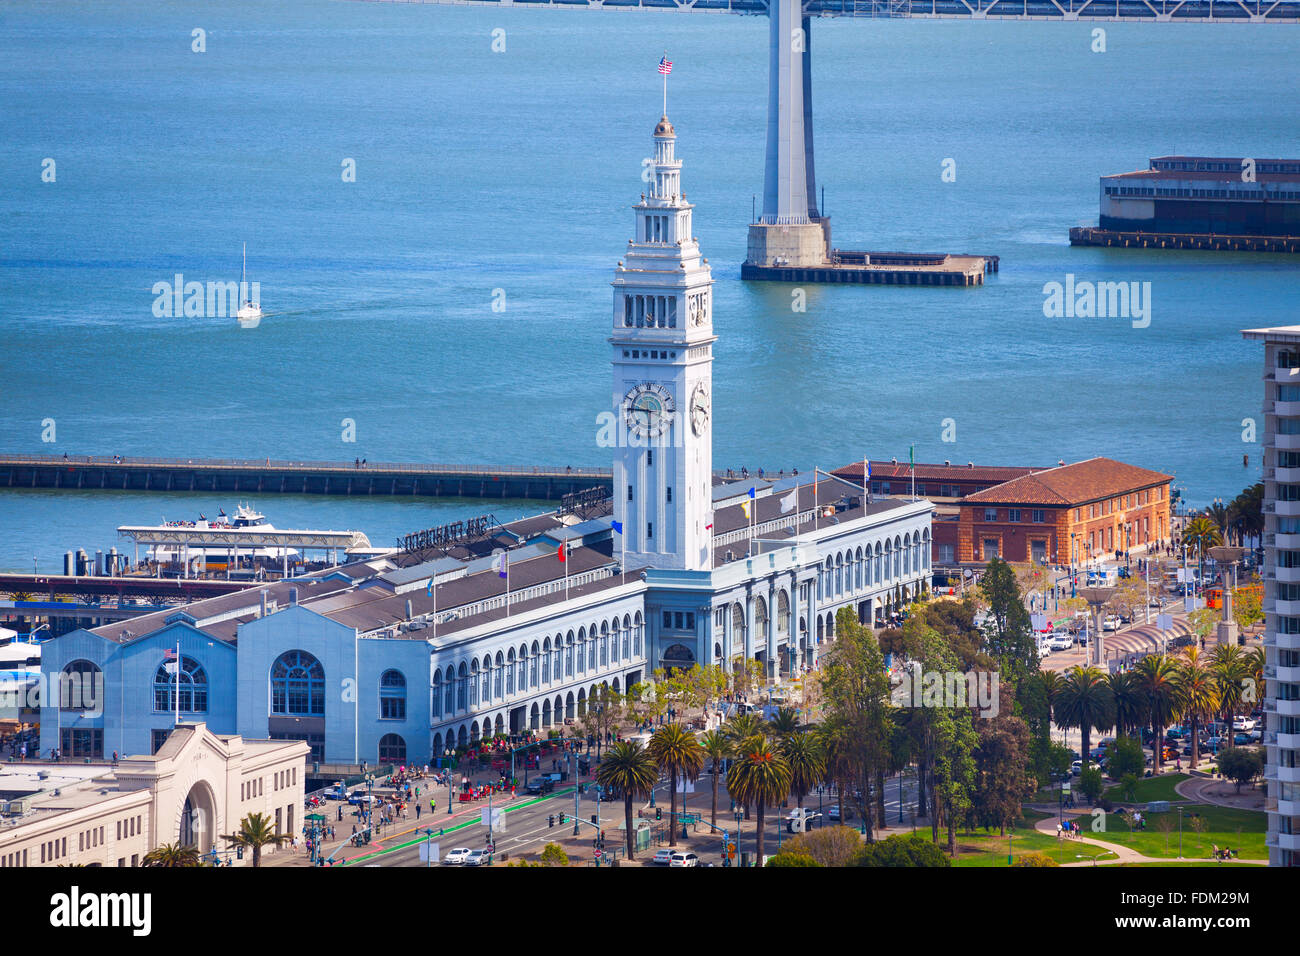 Porto traghetti pier tower building in San Francisco Foto Stock